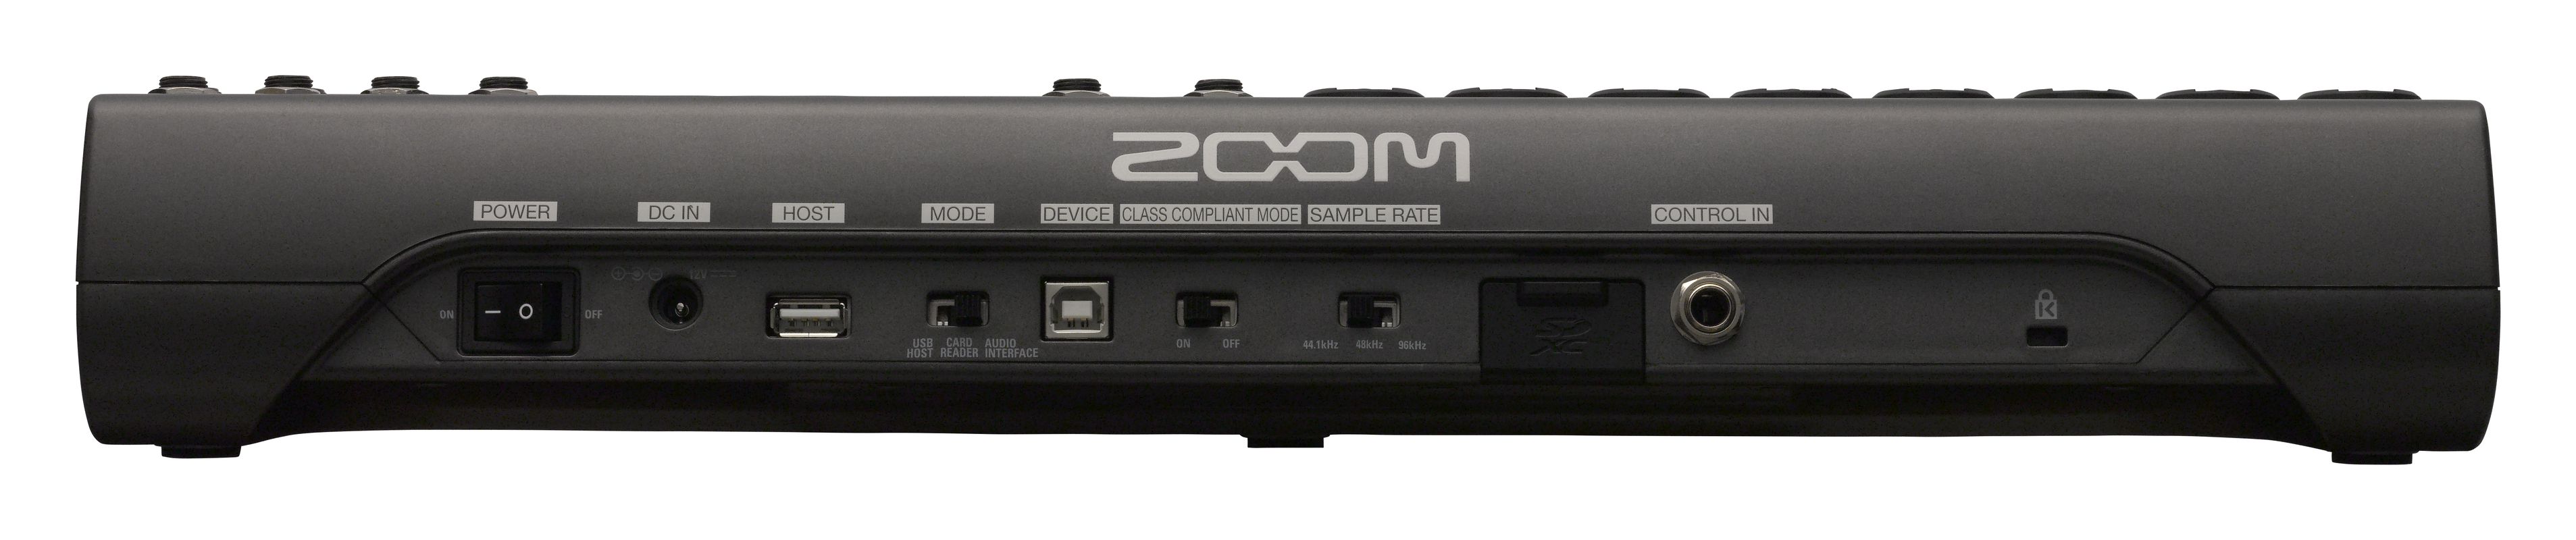 Zoom LiveTrak L-12 Цифровая микшерная консоль, 12 дискретных аудиоканалов купить в prostore.me